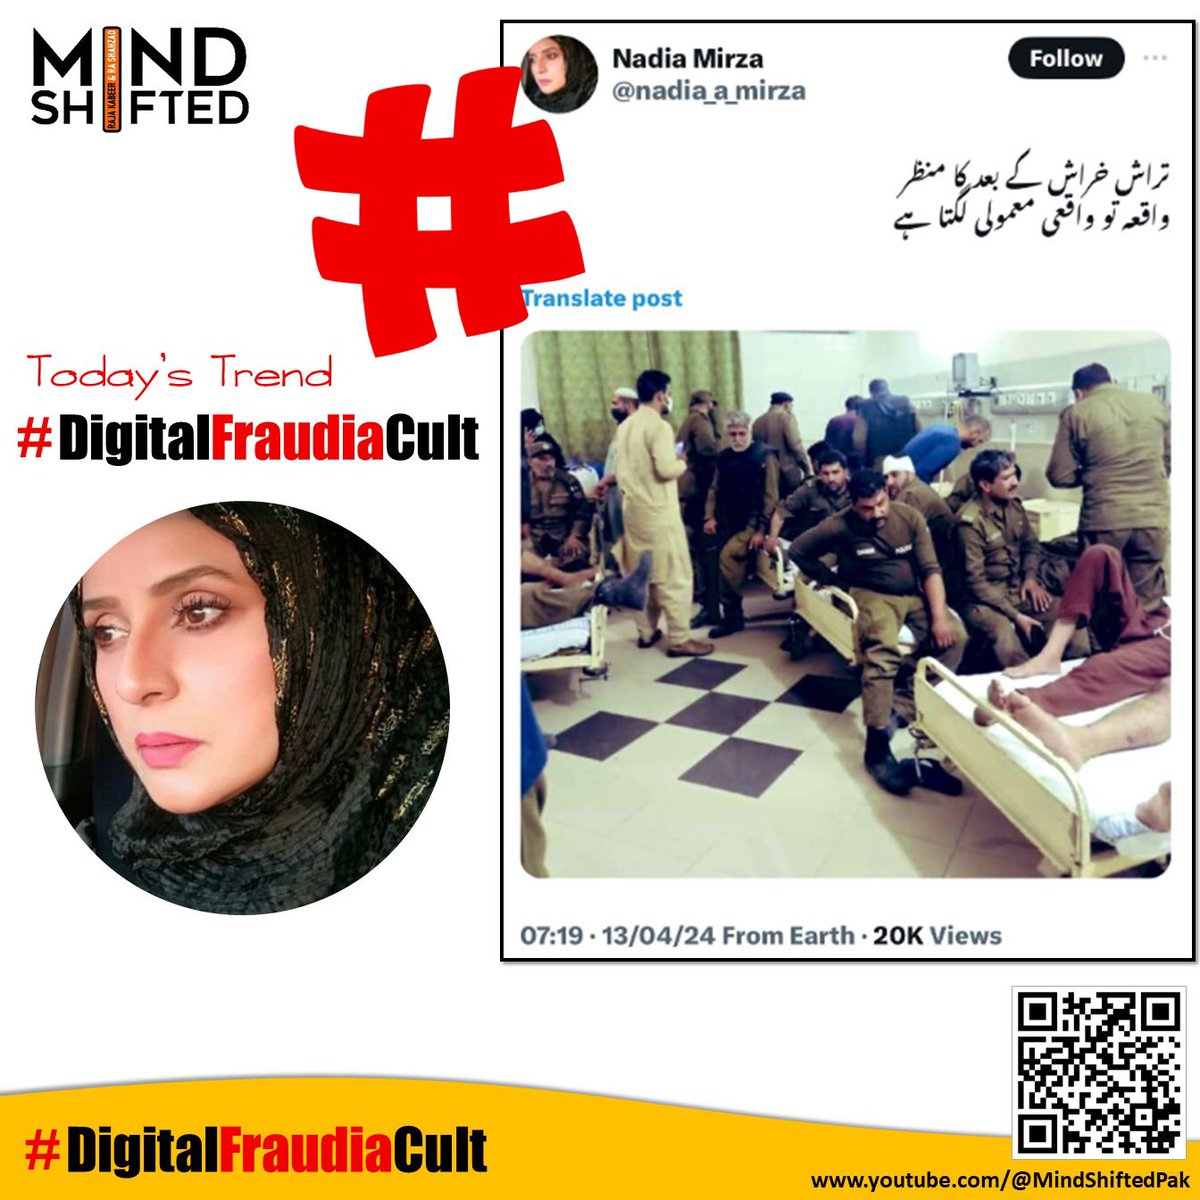 منجی کا ترٹ گیا ہے پاؤا اور ناظرین اس وقت ریاست پاکستان میں ڈیجیٹل فراڈ اپنے عروج پر ہے جہاں فیک نیوز ڈس انفارمیشن پھیلائی جارہی ہے اور اس کارِخیر میں حصہ ڈالنے کیلئے صحافی برادری پہلی صفوں پر براجمان ہے انہیں روکنا ہوگا #DigitalFraudiaCult